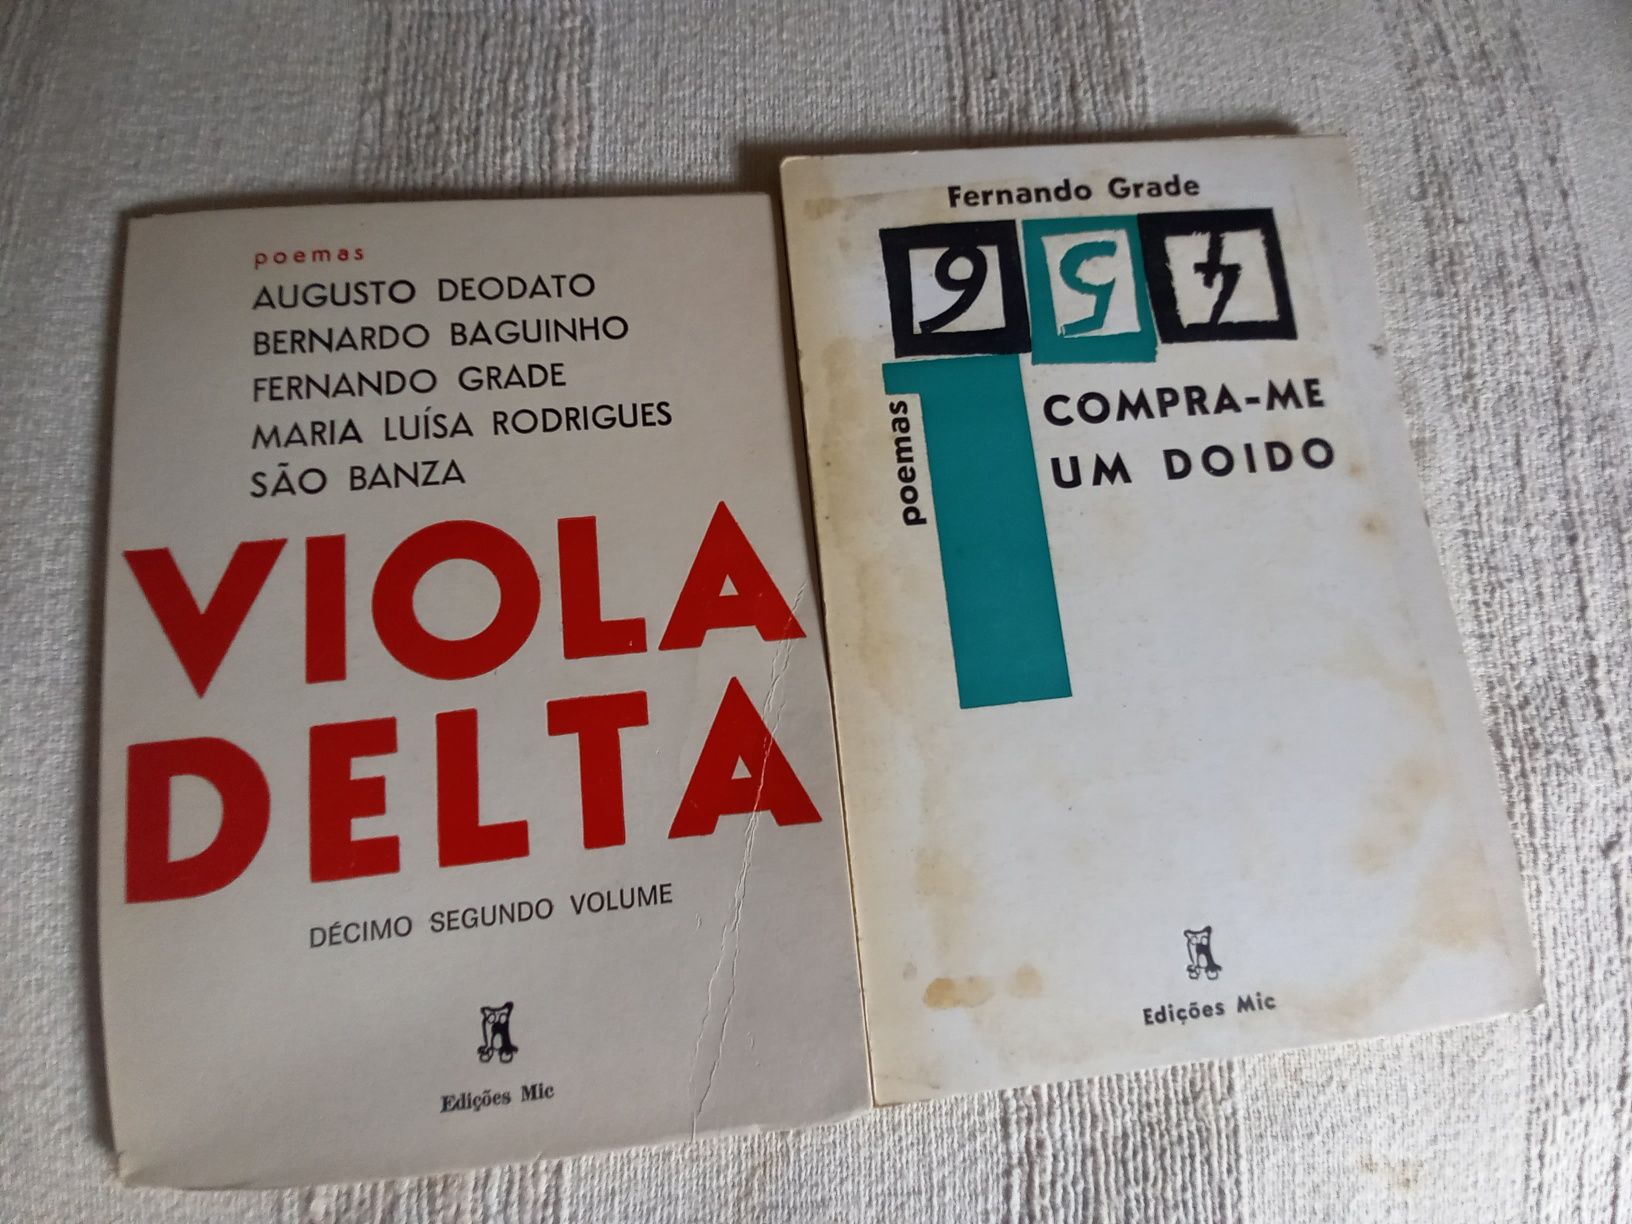 Dois livros de edições MIC de Fernando Grade